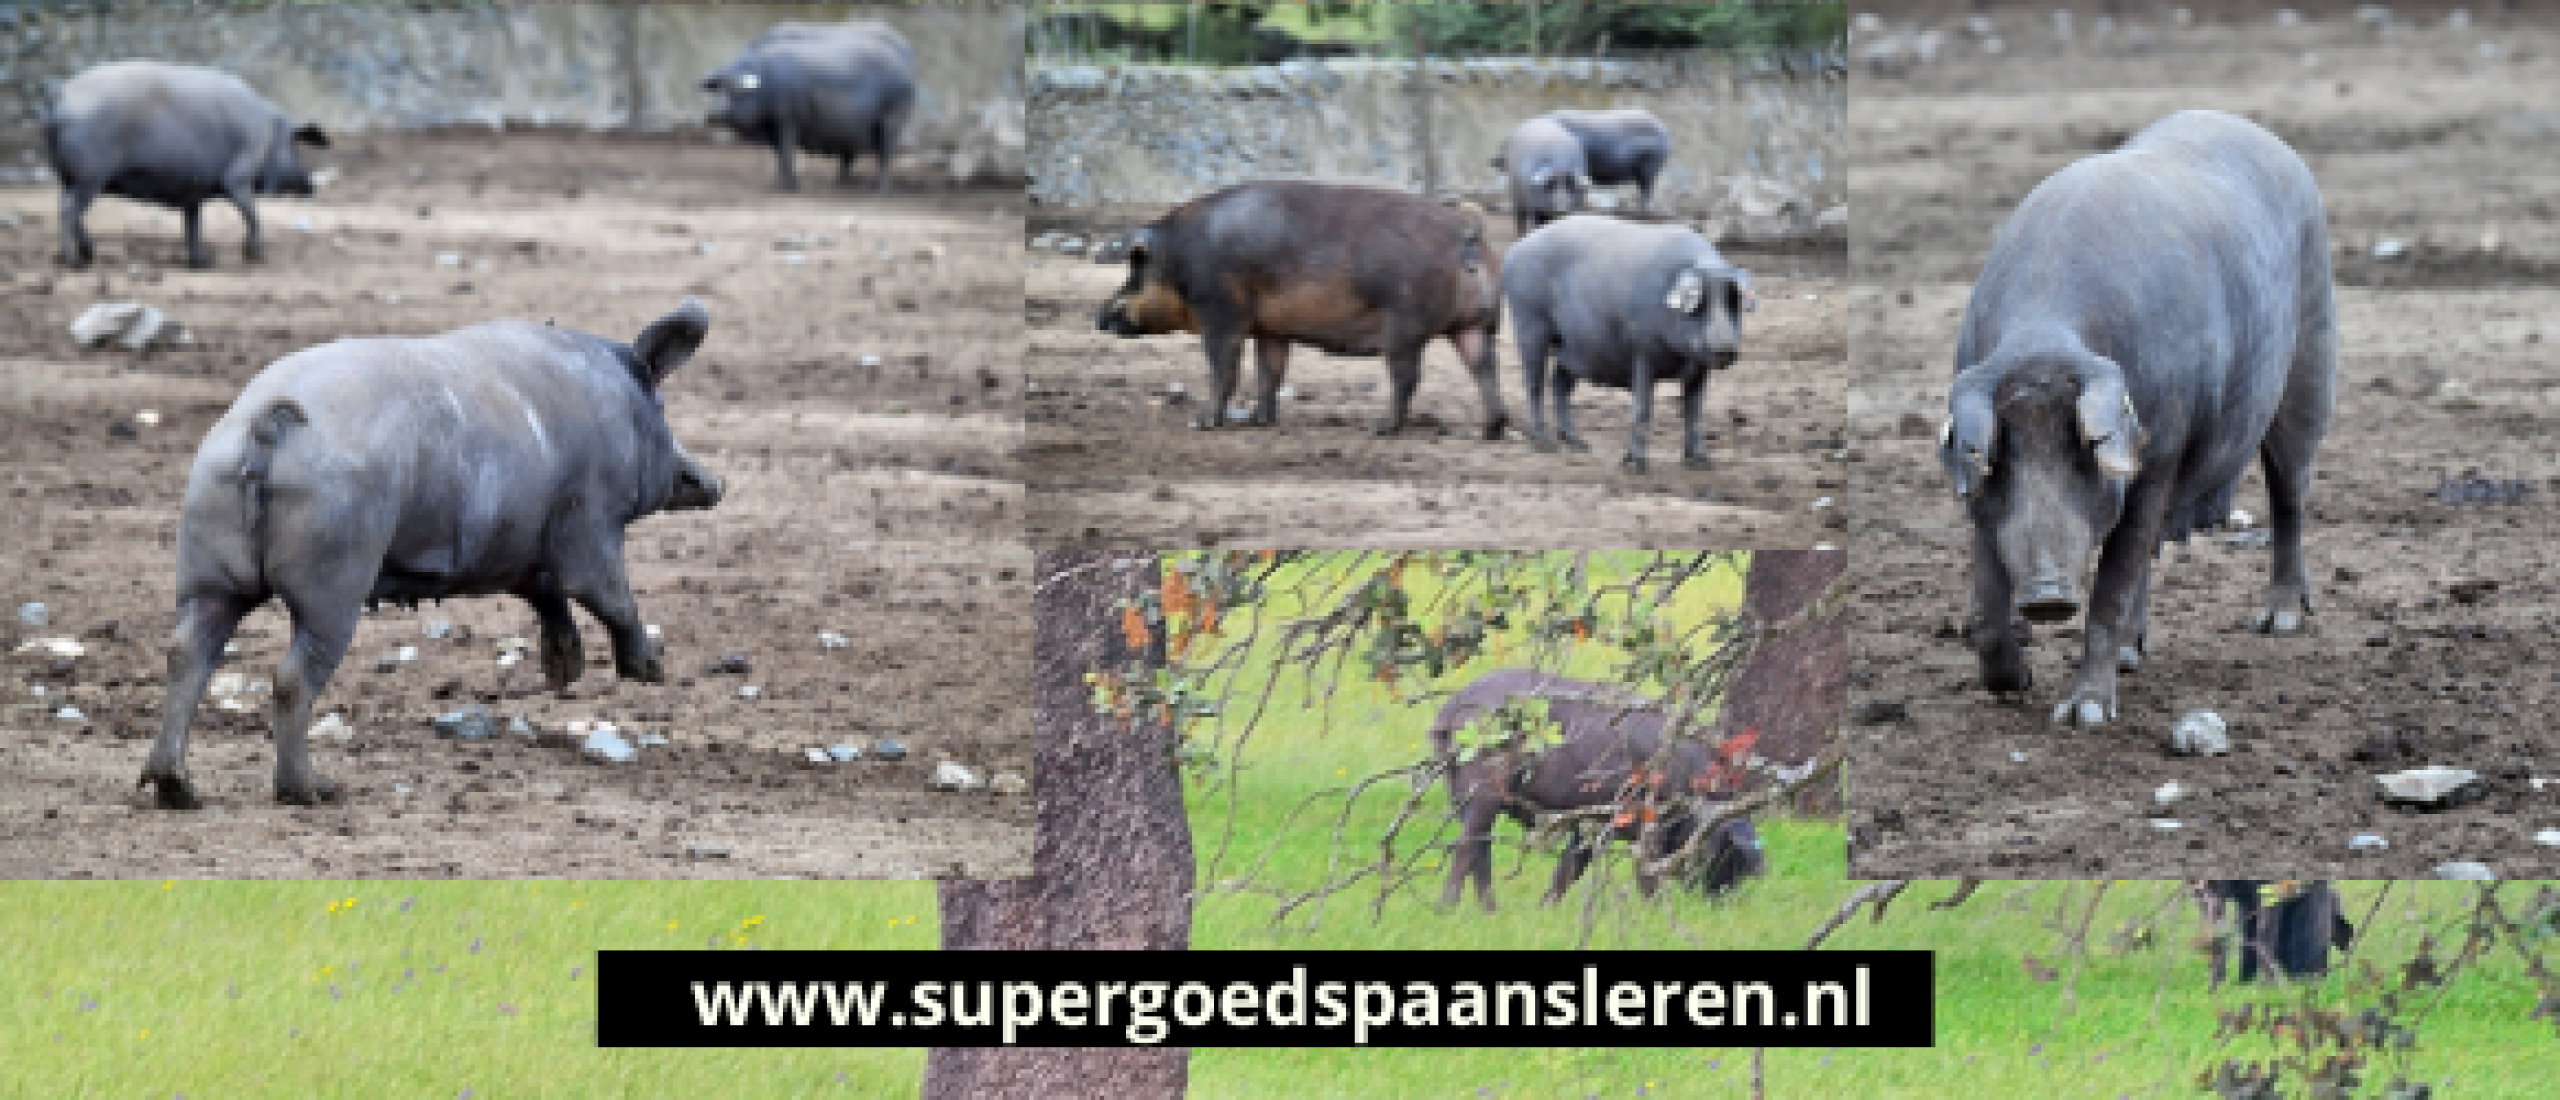 Spanje terug in de tijd: Overal hingen varkenspoten